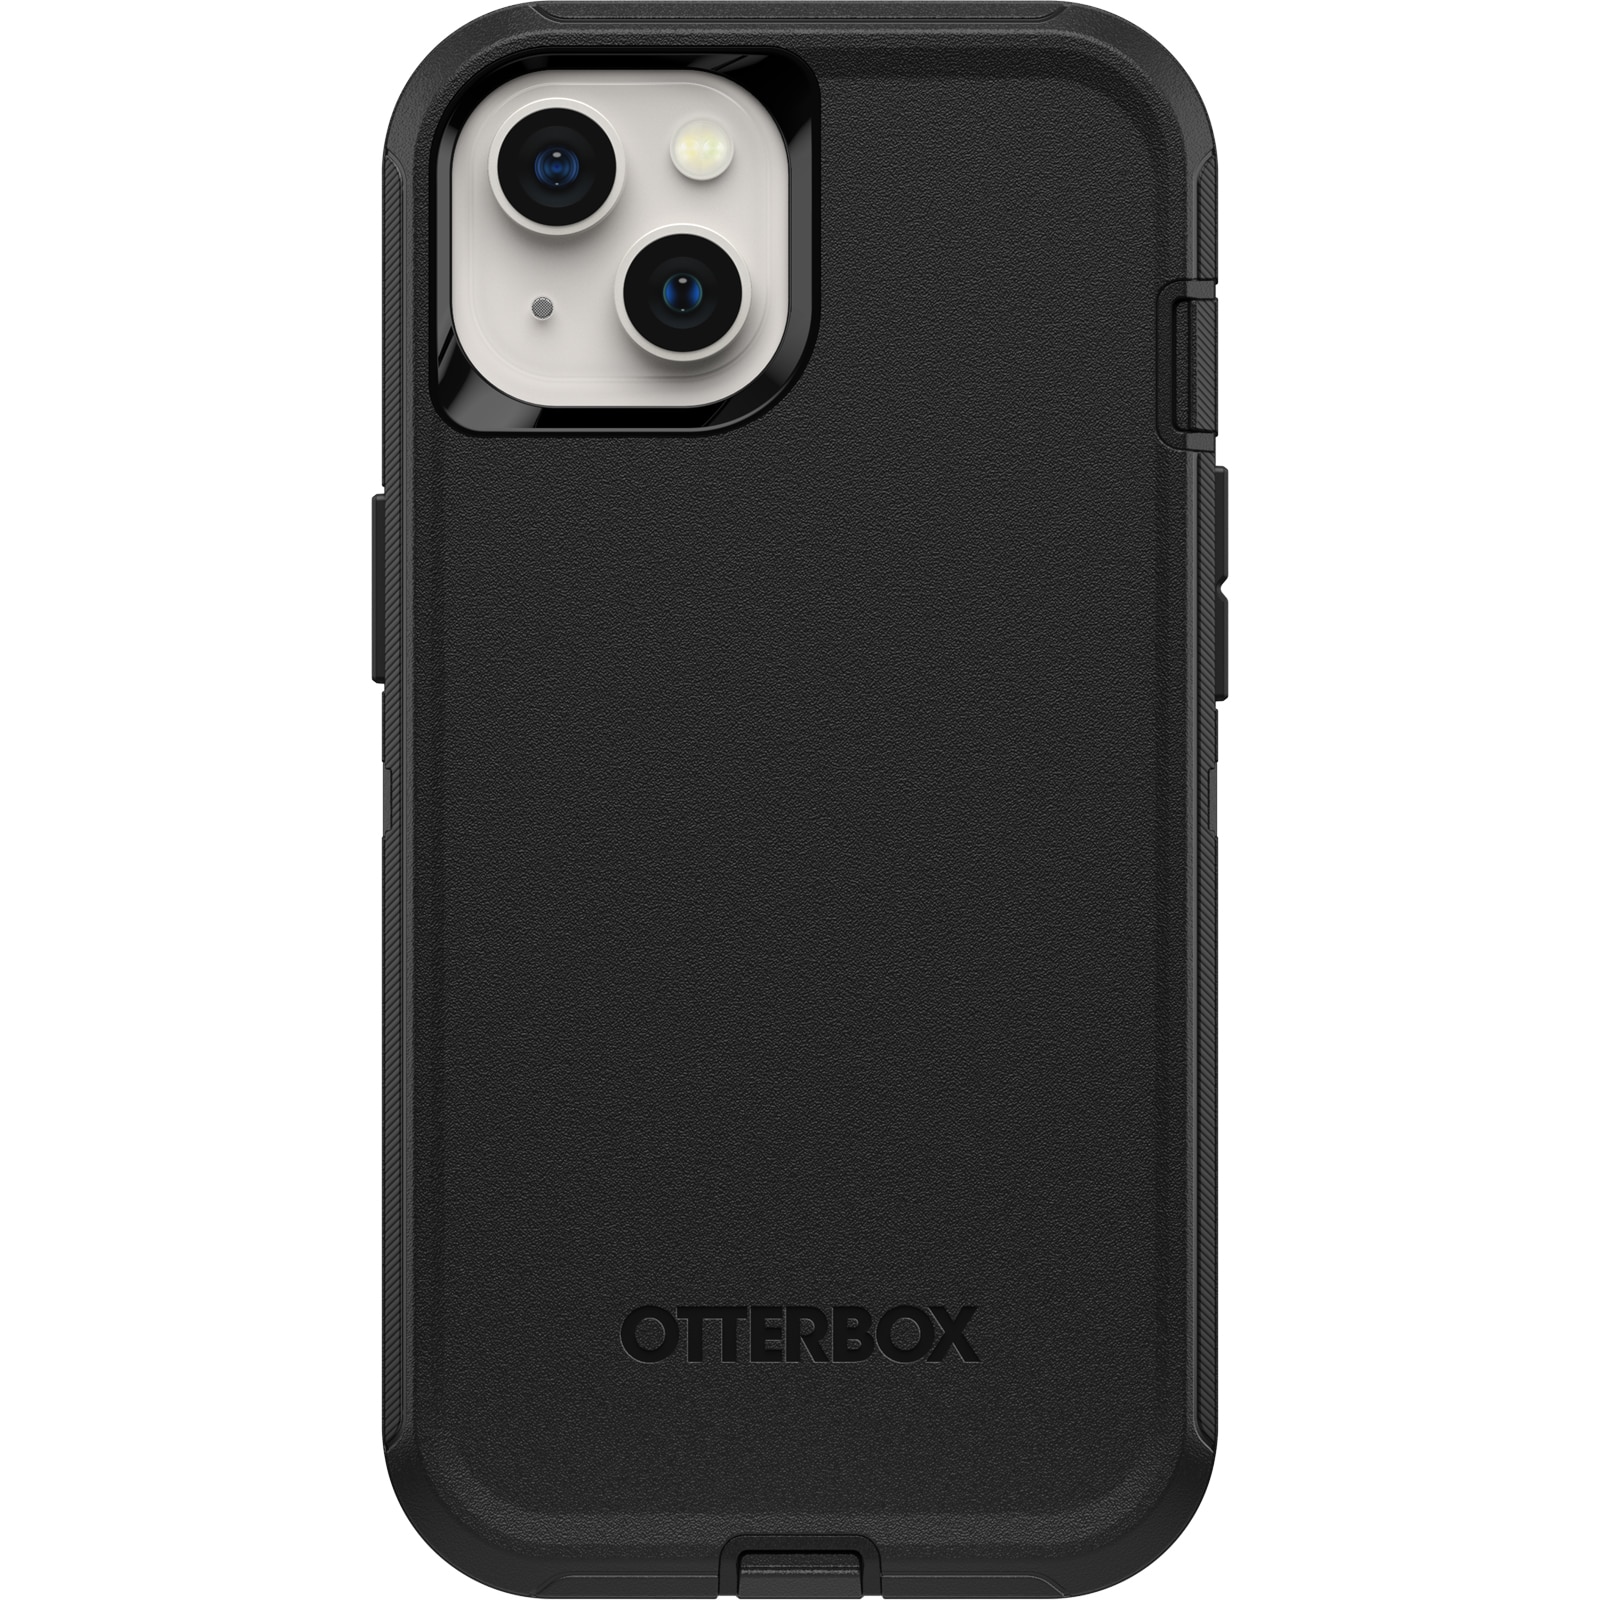 Defender Case iPhone 12 Mini Black